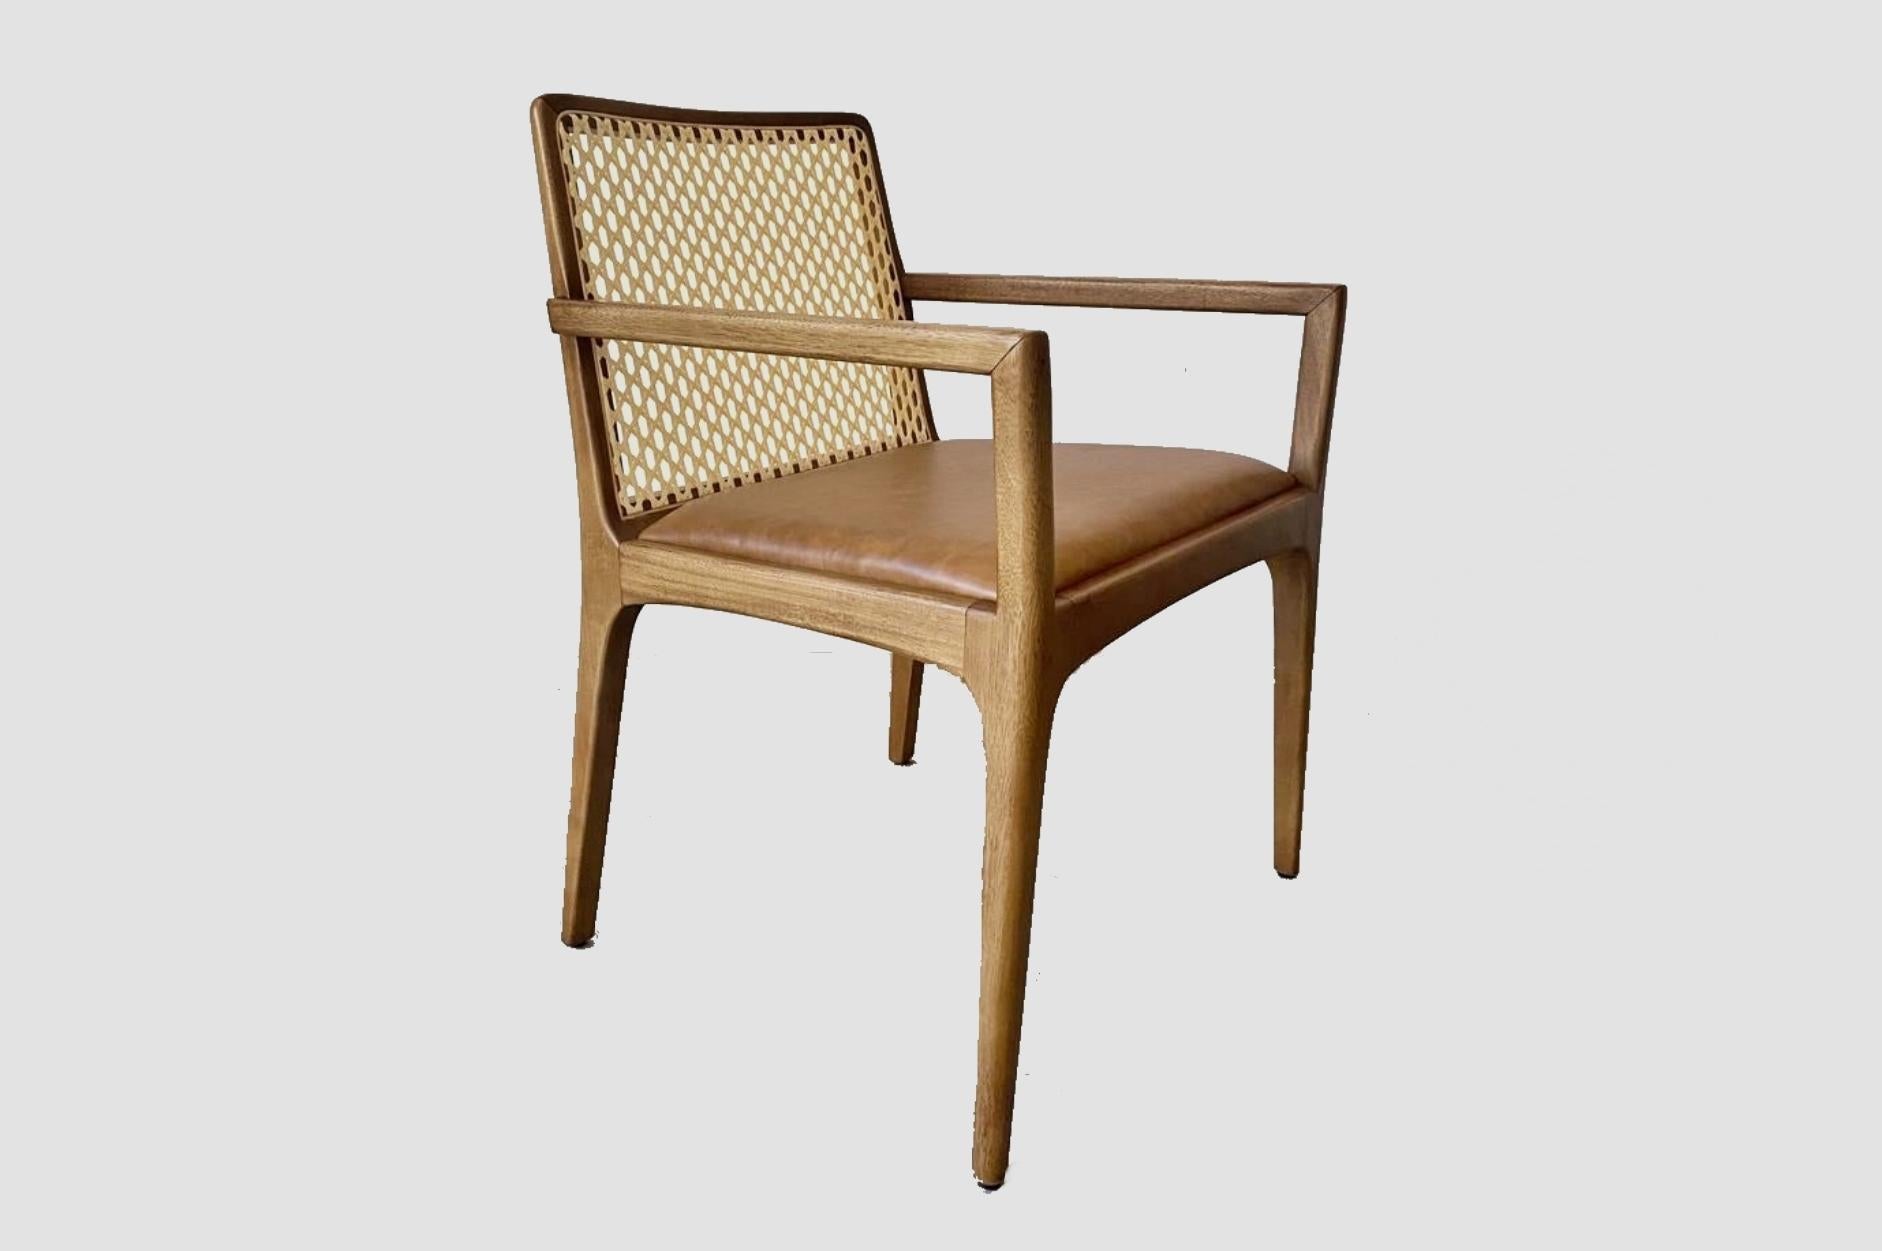 Lorsqu'elle a créé la chaise Julia avec des accoudoirs en bois, Alessandra Delgado voulait une pièce aux caractéristiques délicates, explorant les courbes du bois avec un design inspiré du travail du maître designer Joaquim Tenreiro. La chaise Julia